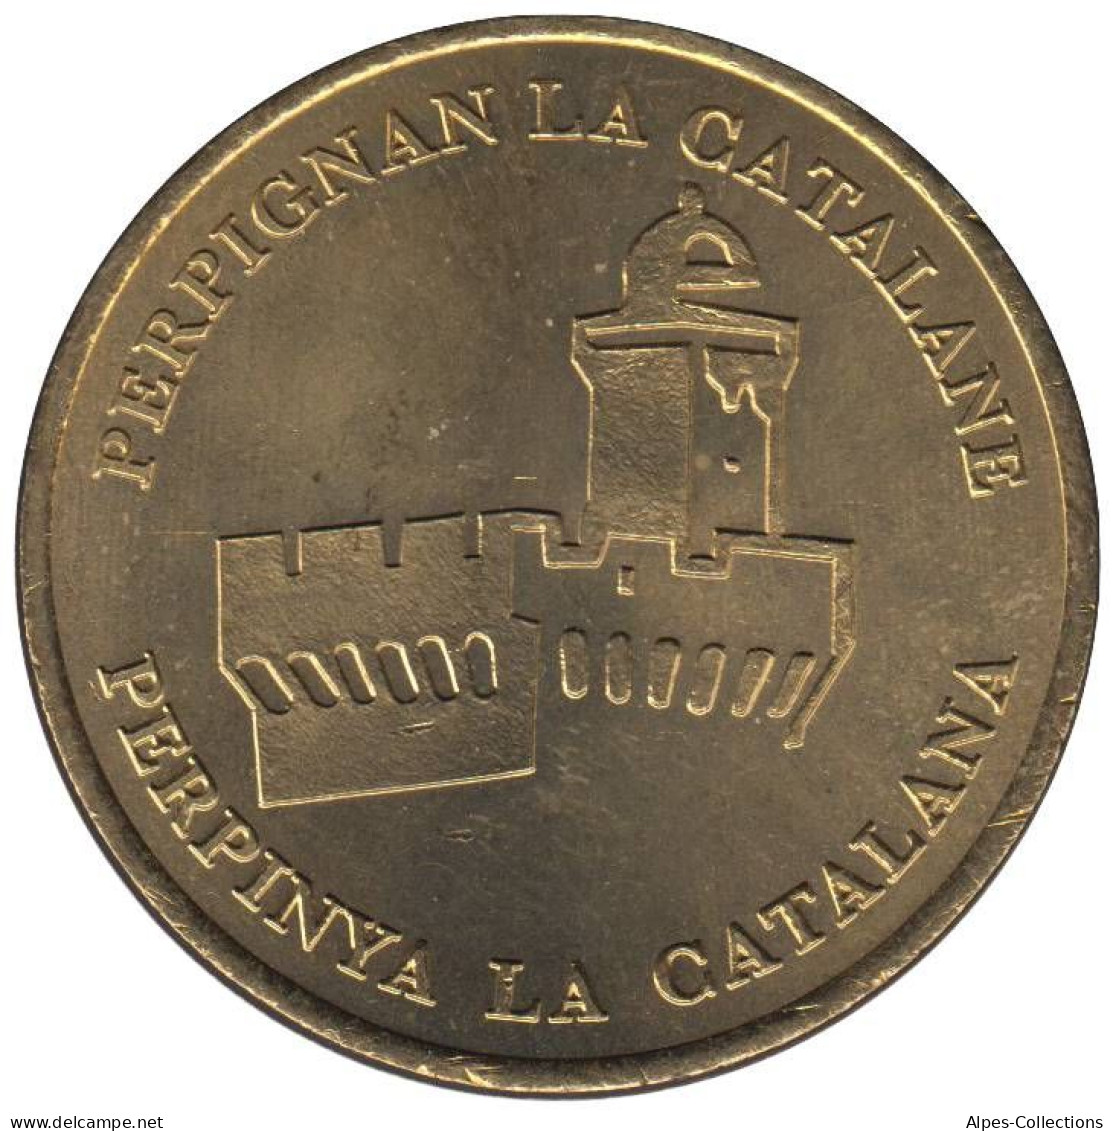 PERPIGNAN - EU0010.2 - 1 EURO DES VILLES - Réf: T538 - 1998 - Euros Des Villes